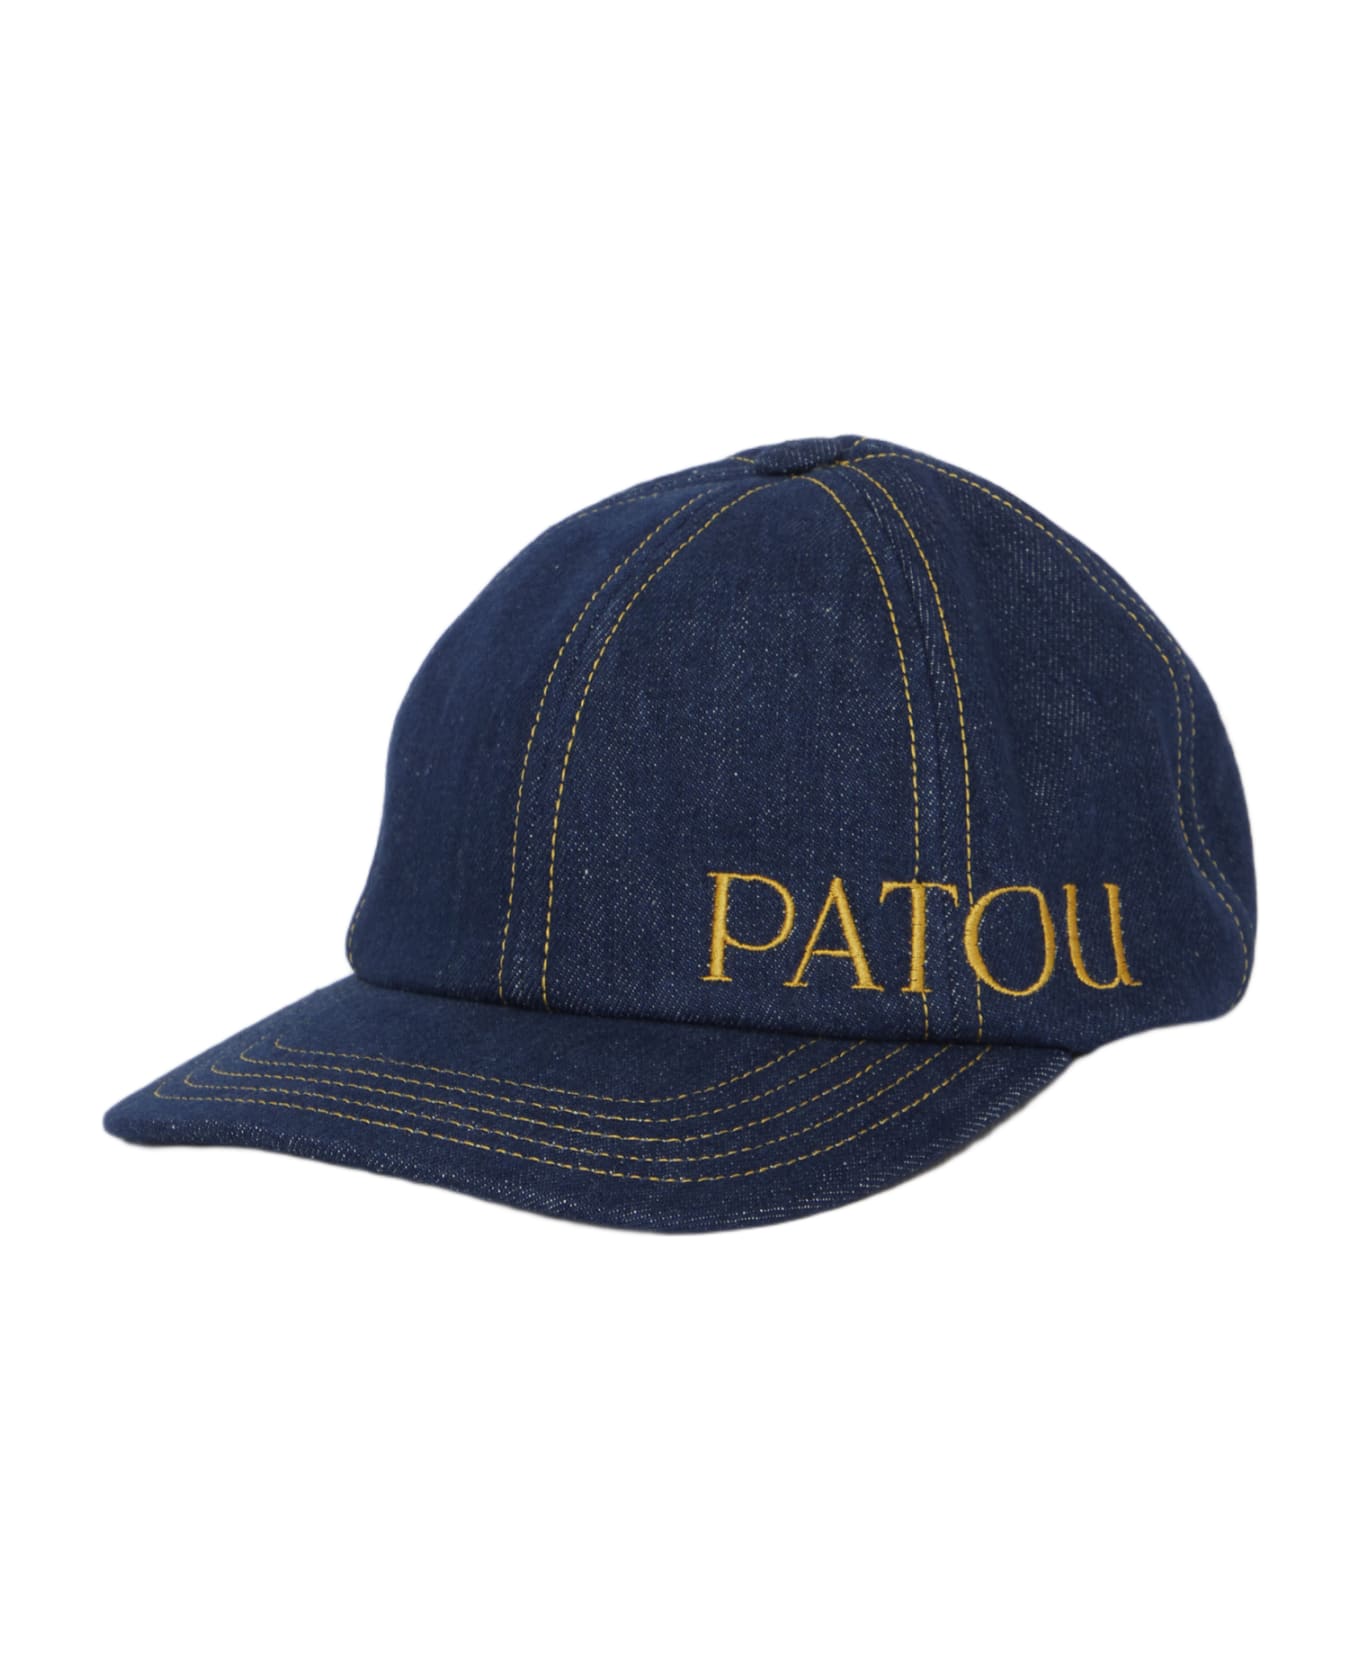 Patou Cap In Denim - Denim 帽子